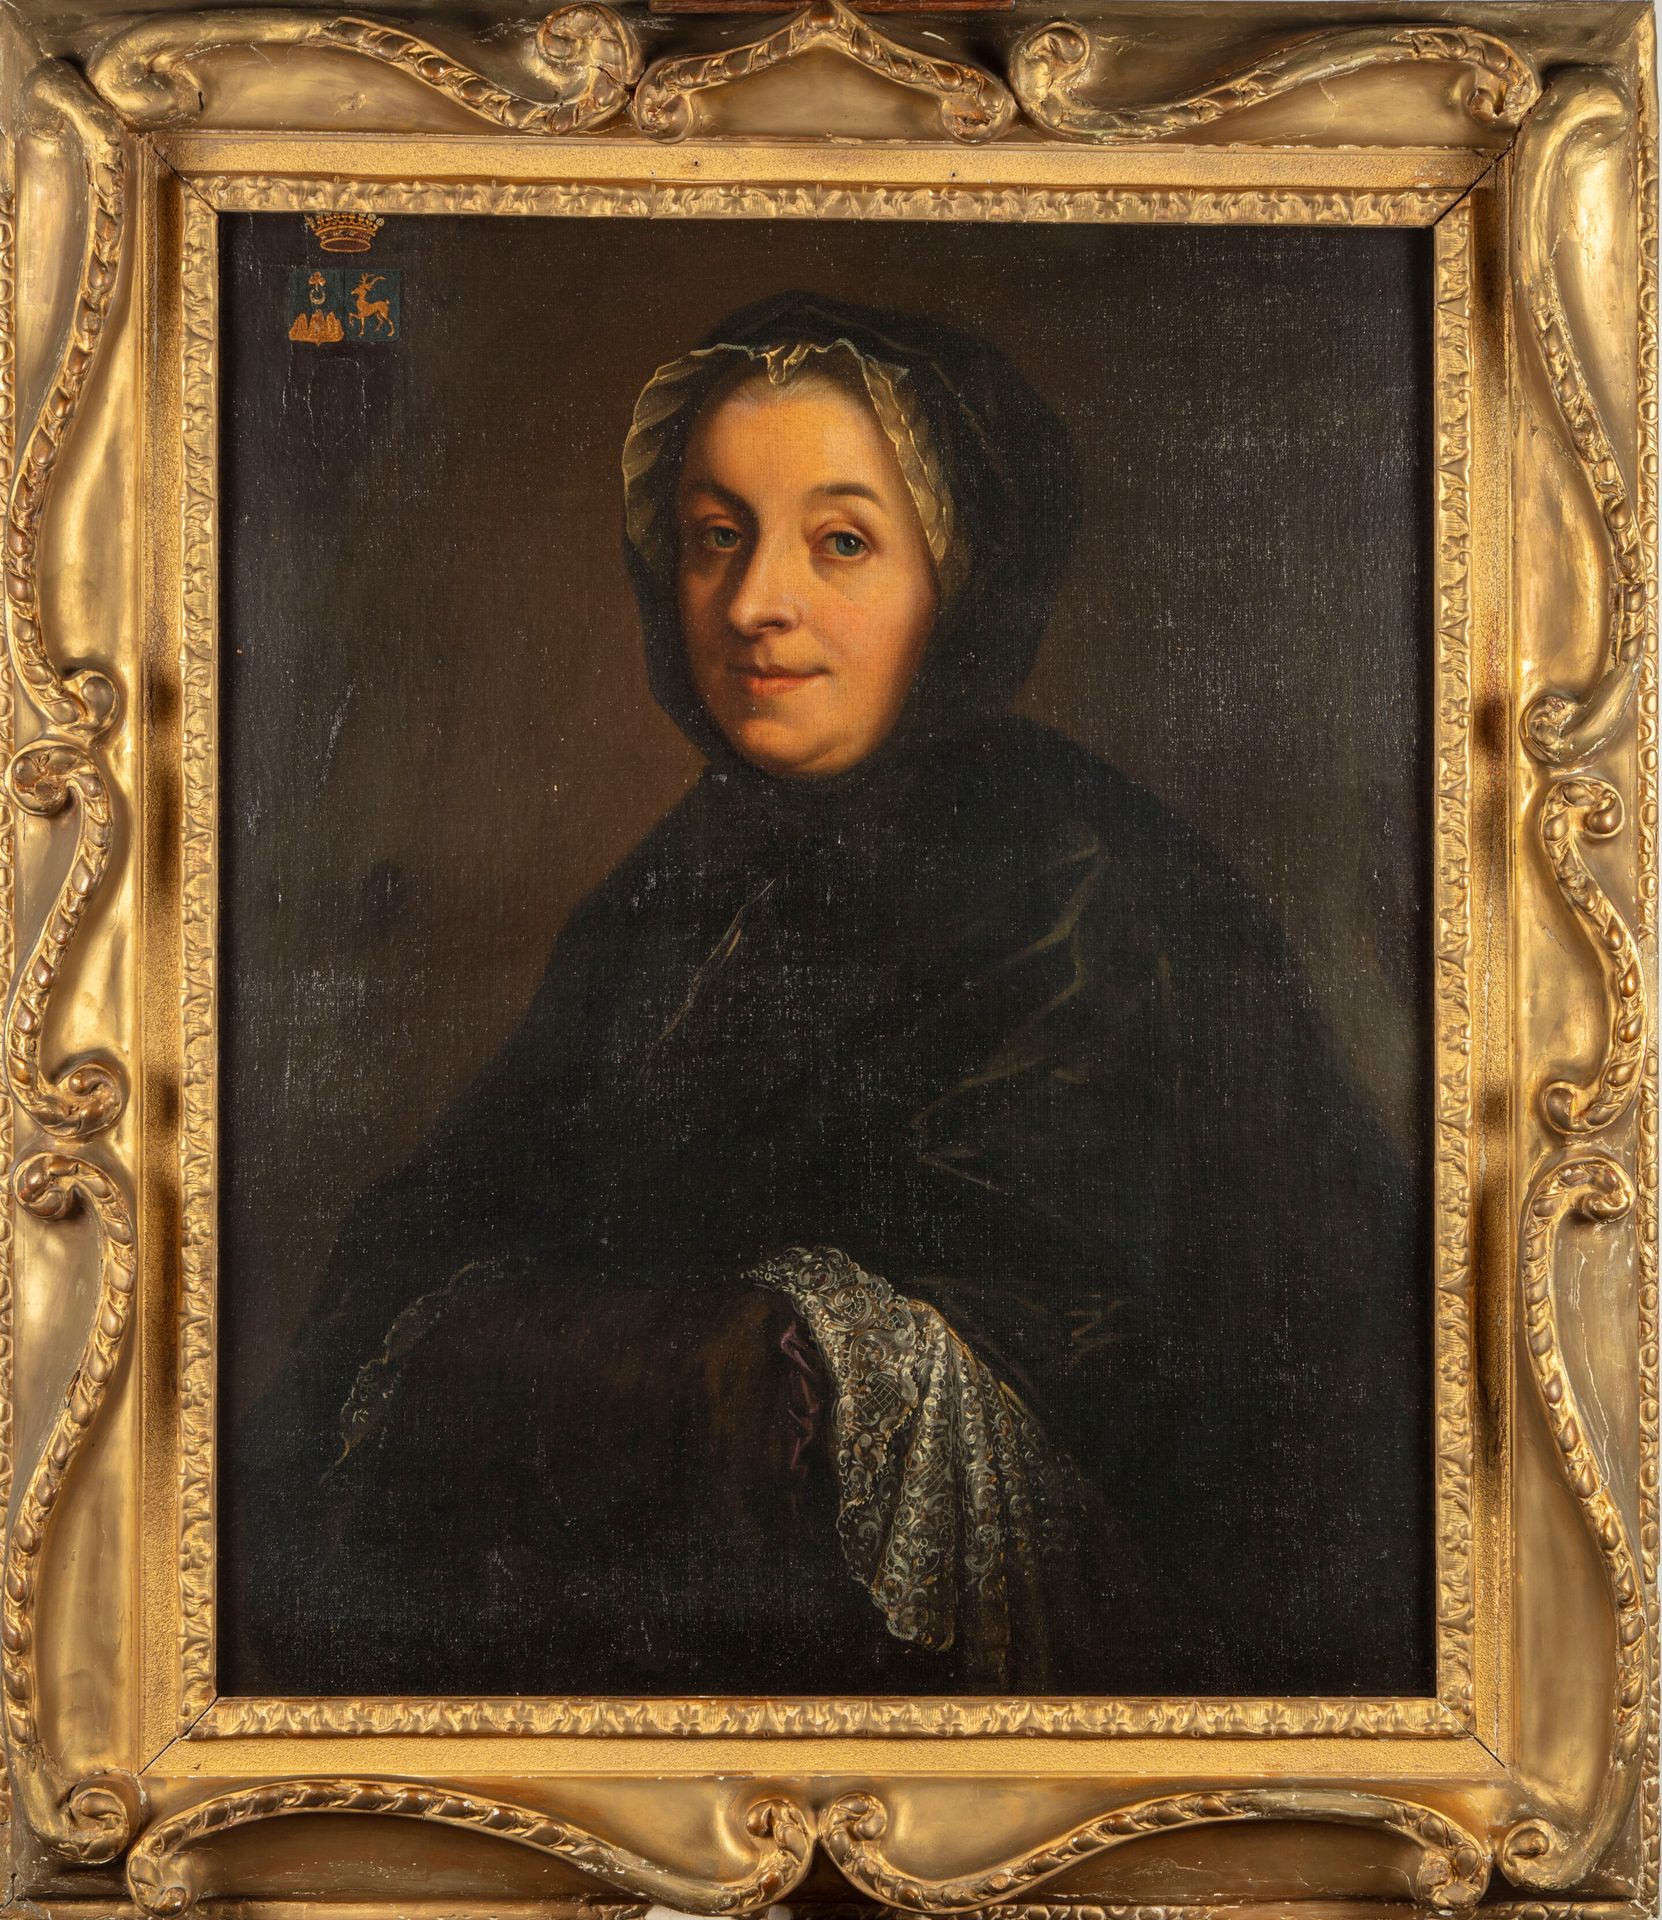 ECOLE FRANCAISE Siglo XVIII ESCUELA FRANCESA 

Presunto retrato de Anne-Marie de&hellip;